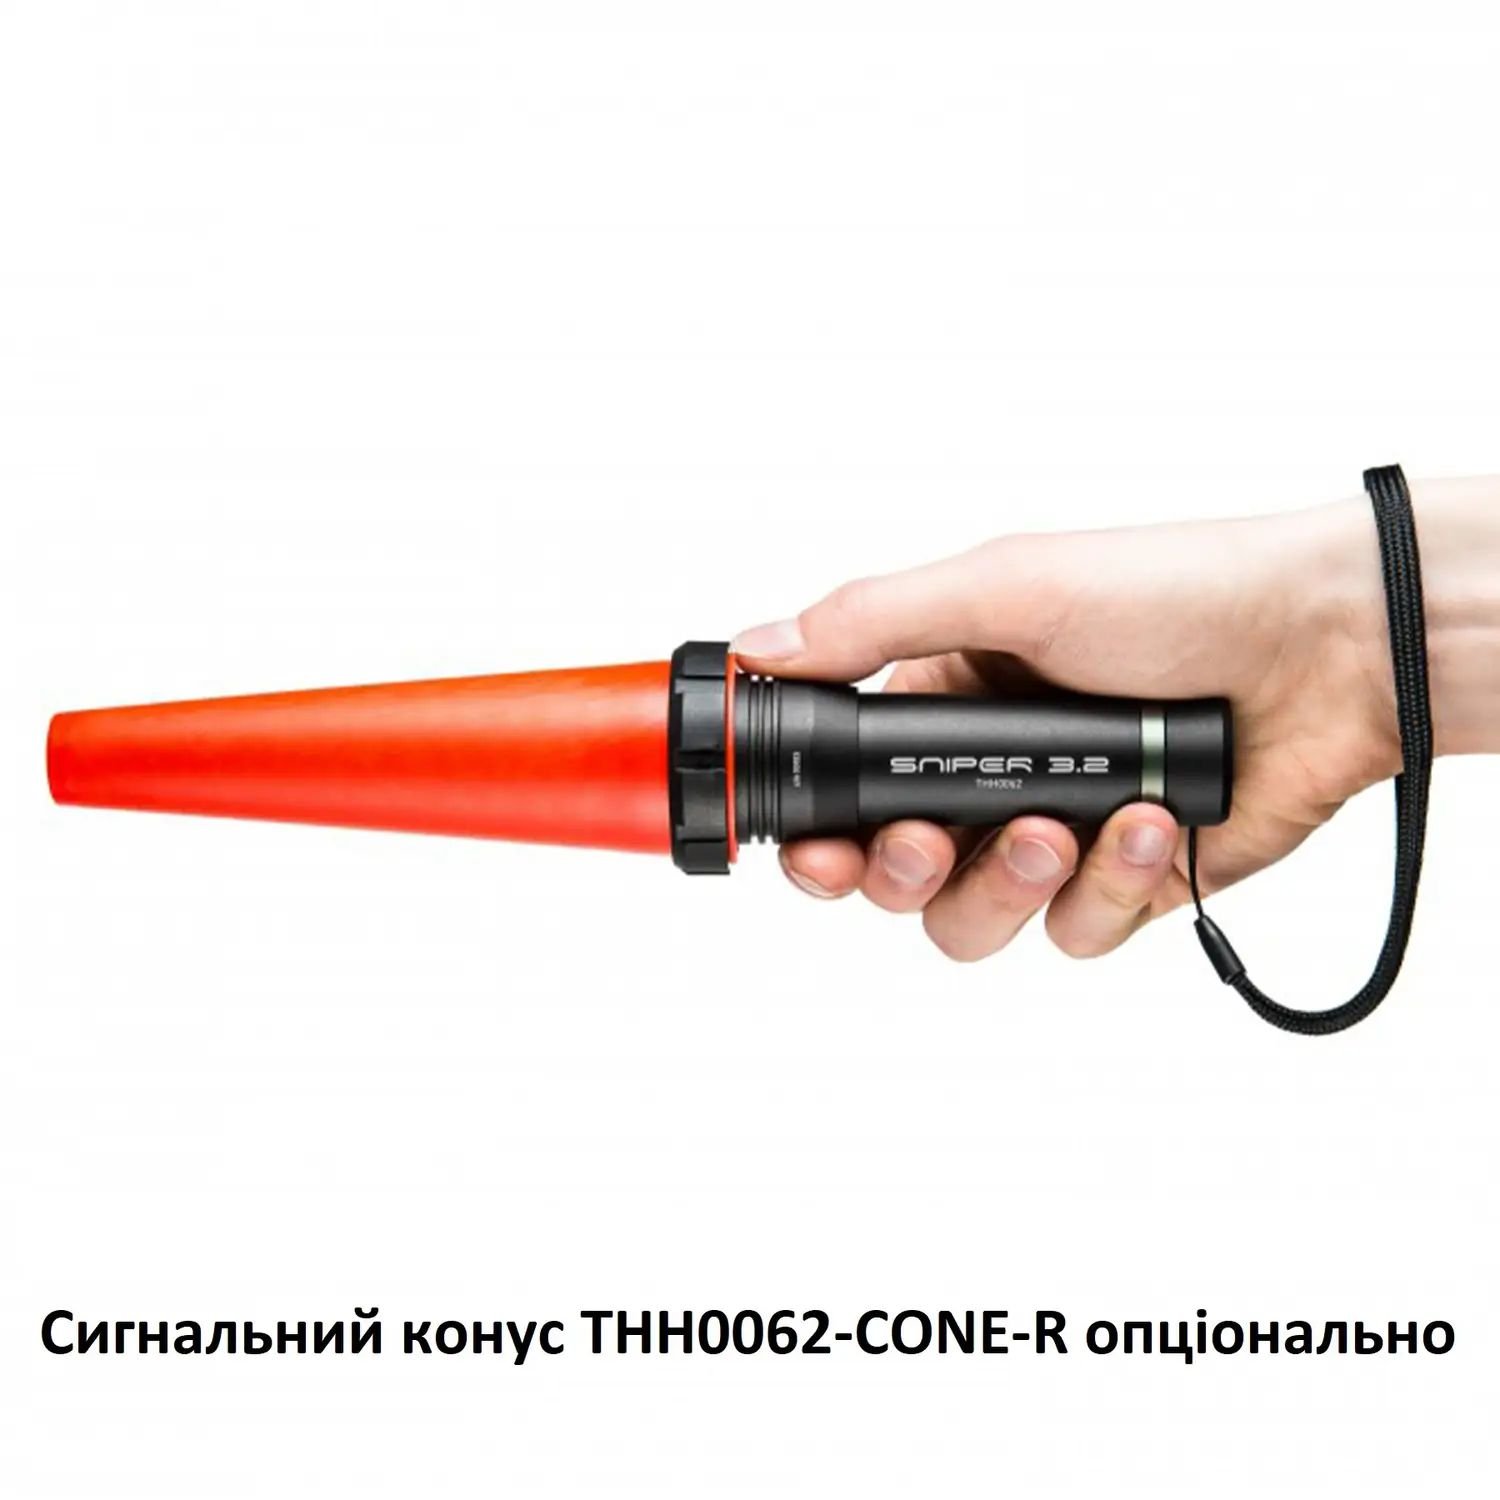 Фонарь тактический Mactronic Sniper 3.2, 420 Lm Silent Switch (THH0062) - фото 7